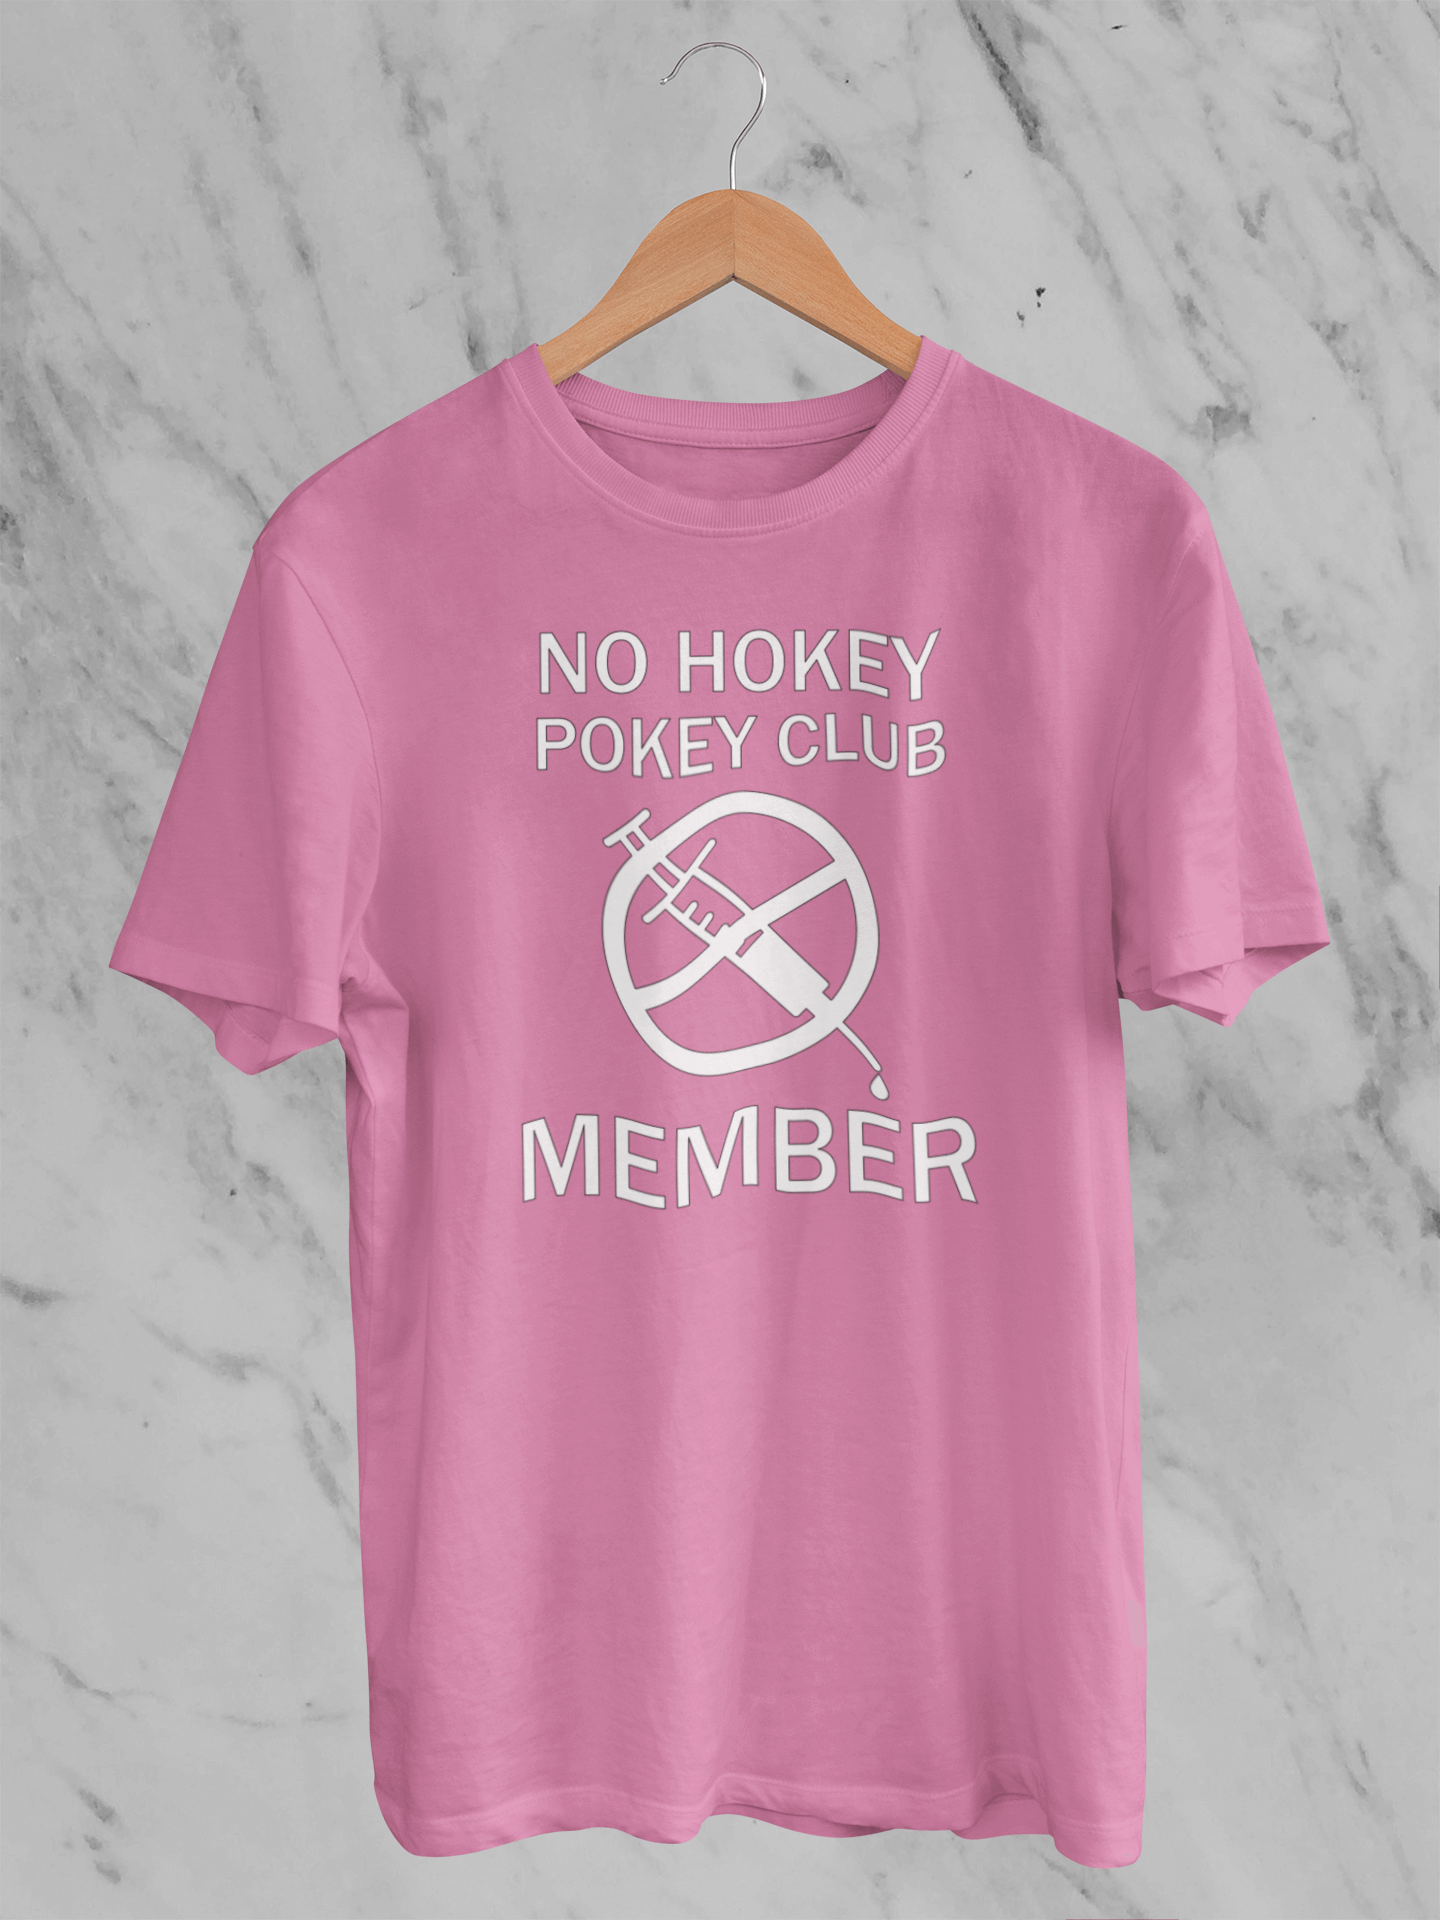 No Hokey Pokey Club Member T-Shirt - Unisex